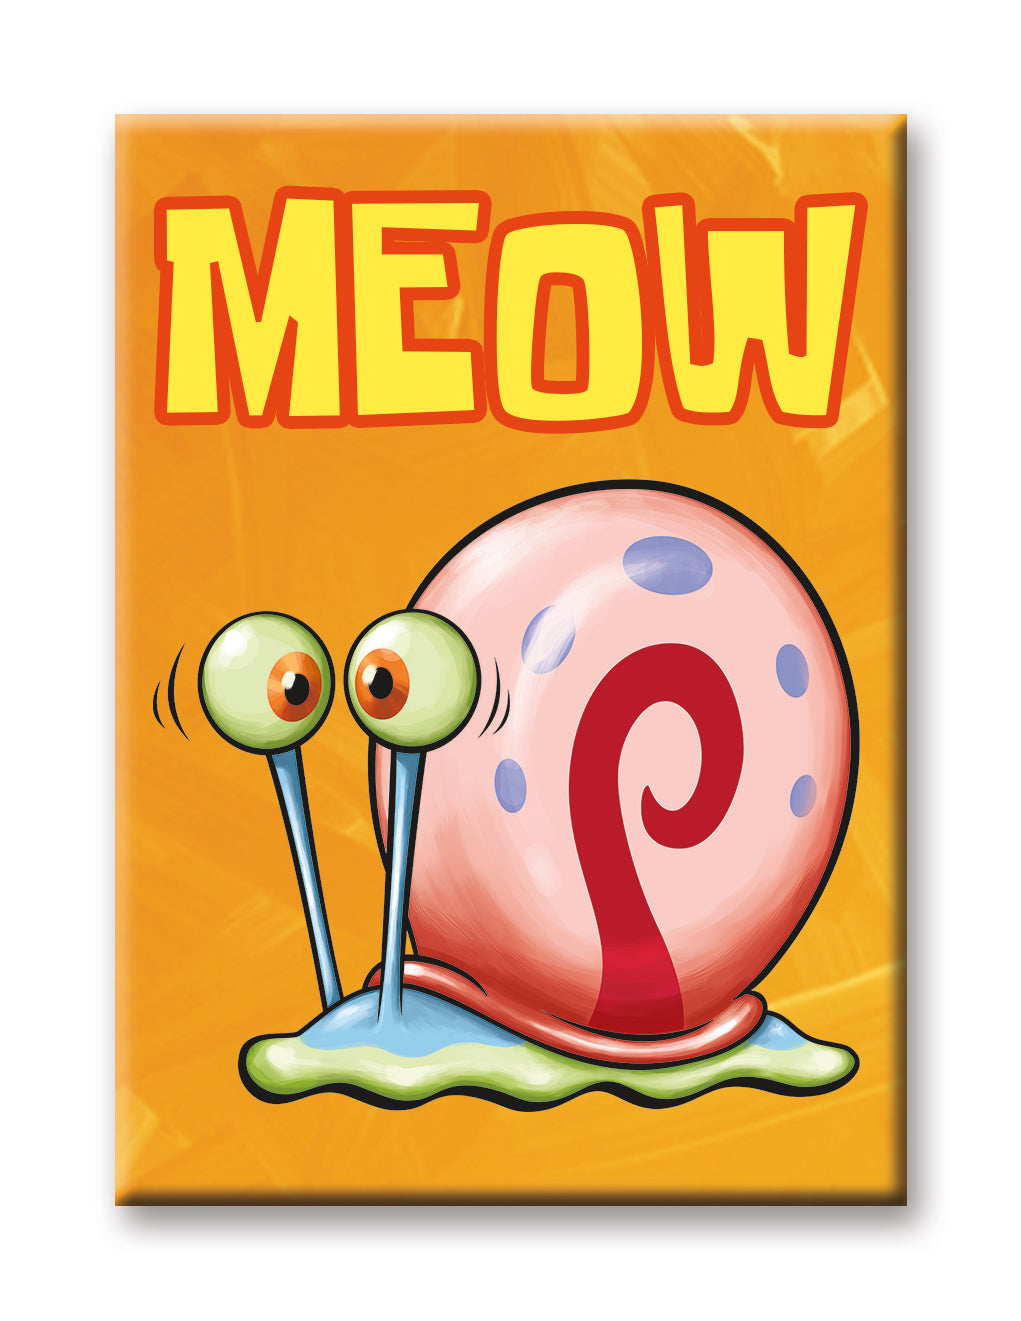 Spongebob Gary Meow Magnet